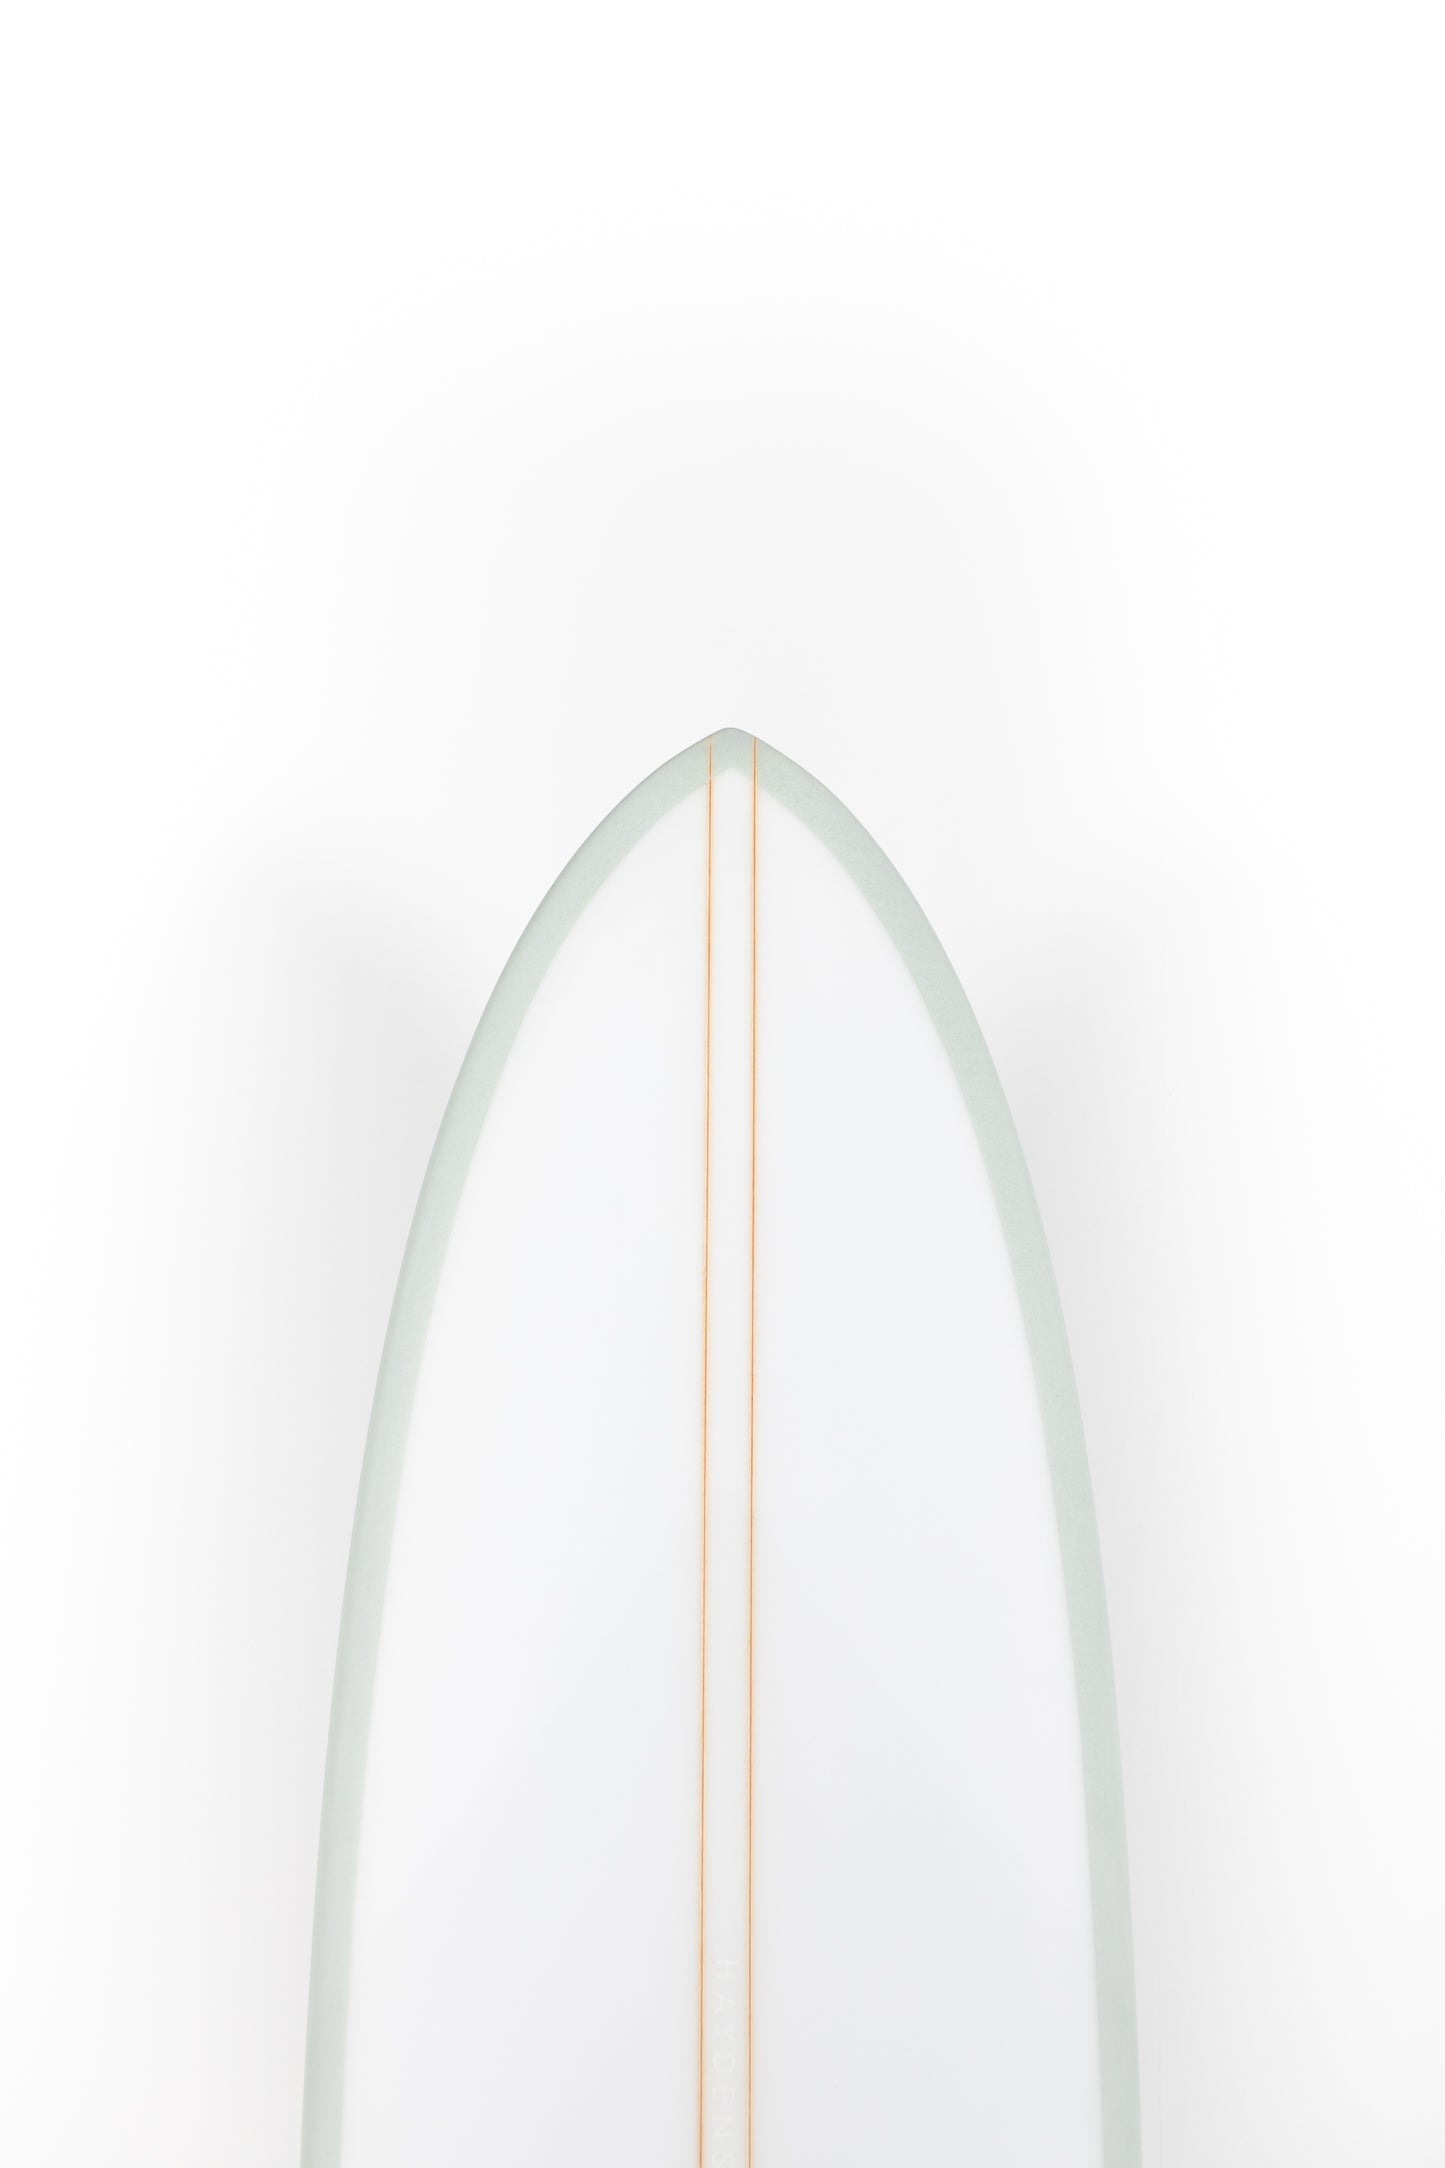 
                  
                    Pukas surf Shop - HaydenShapes Surfboard - MID LENGTH GLIDER - BLU TILE - 6'7" X 20 1/2" X 2 5/8" - 39.5L
                  
                